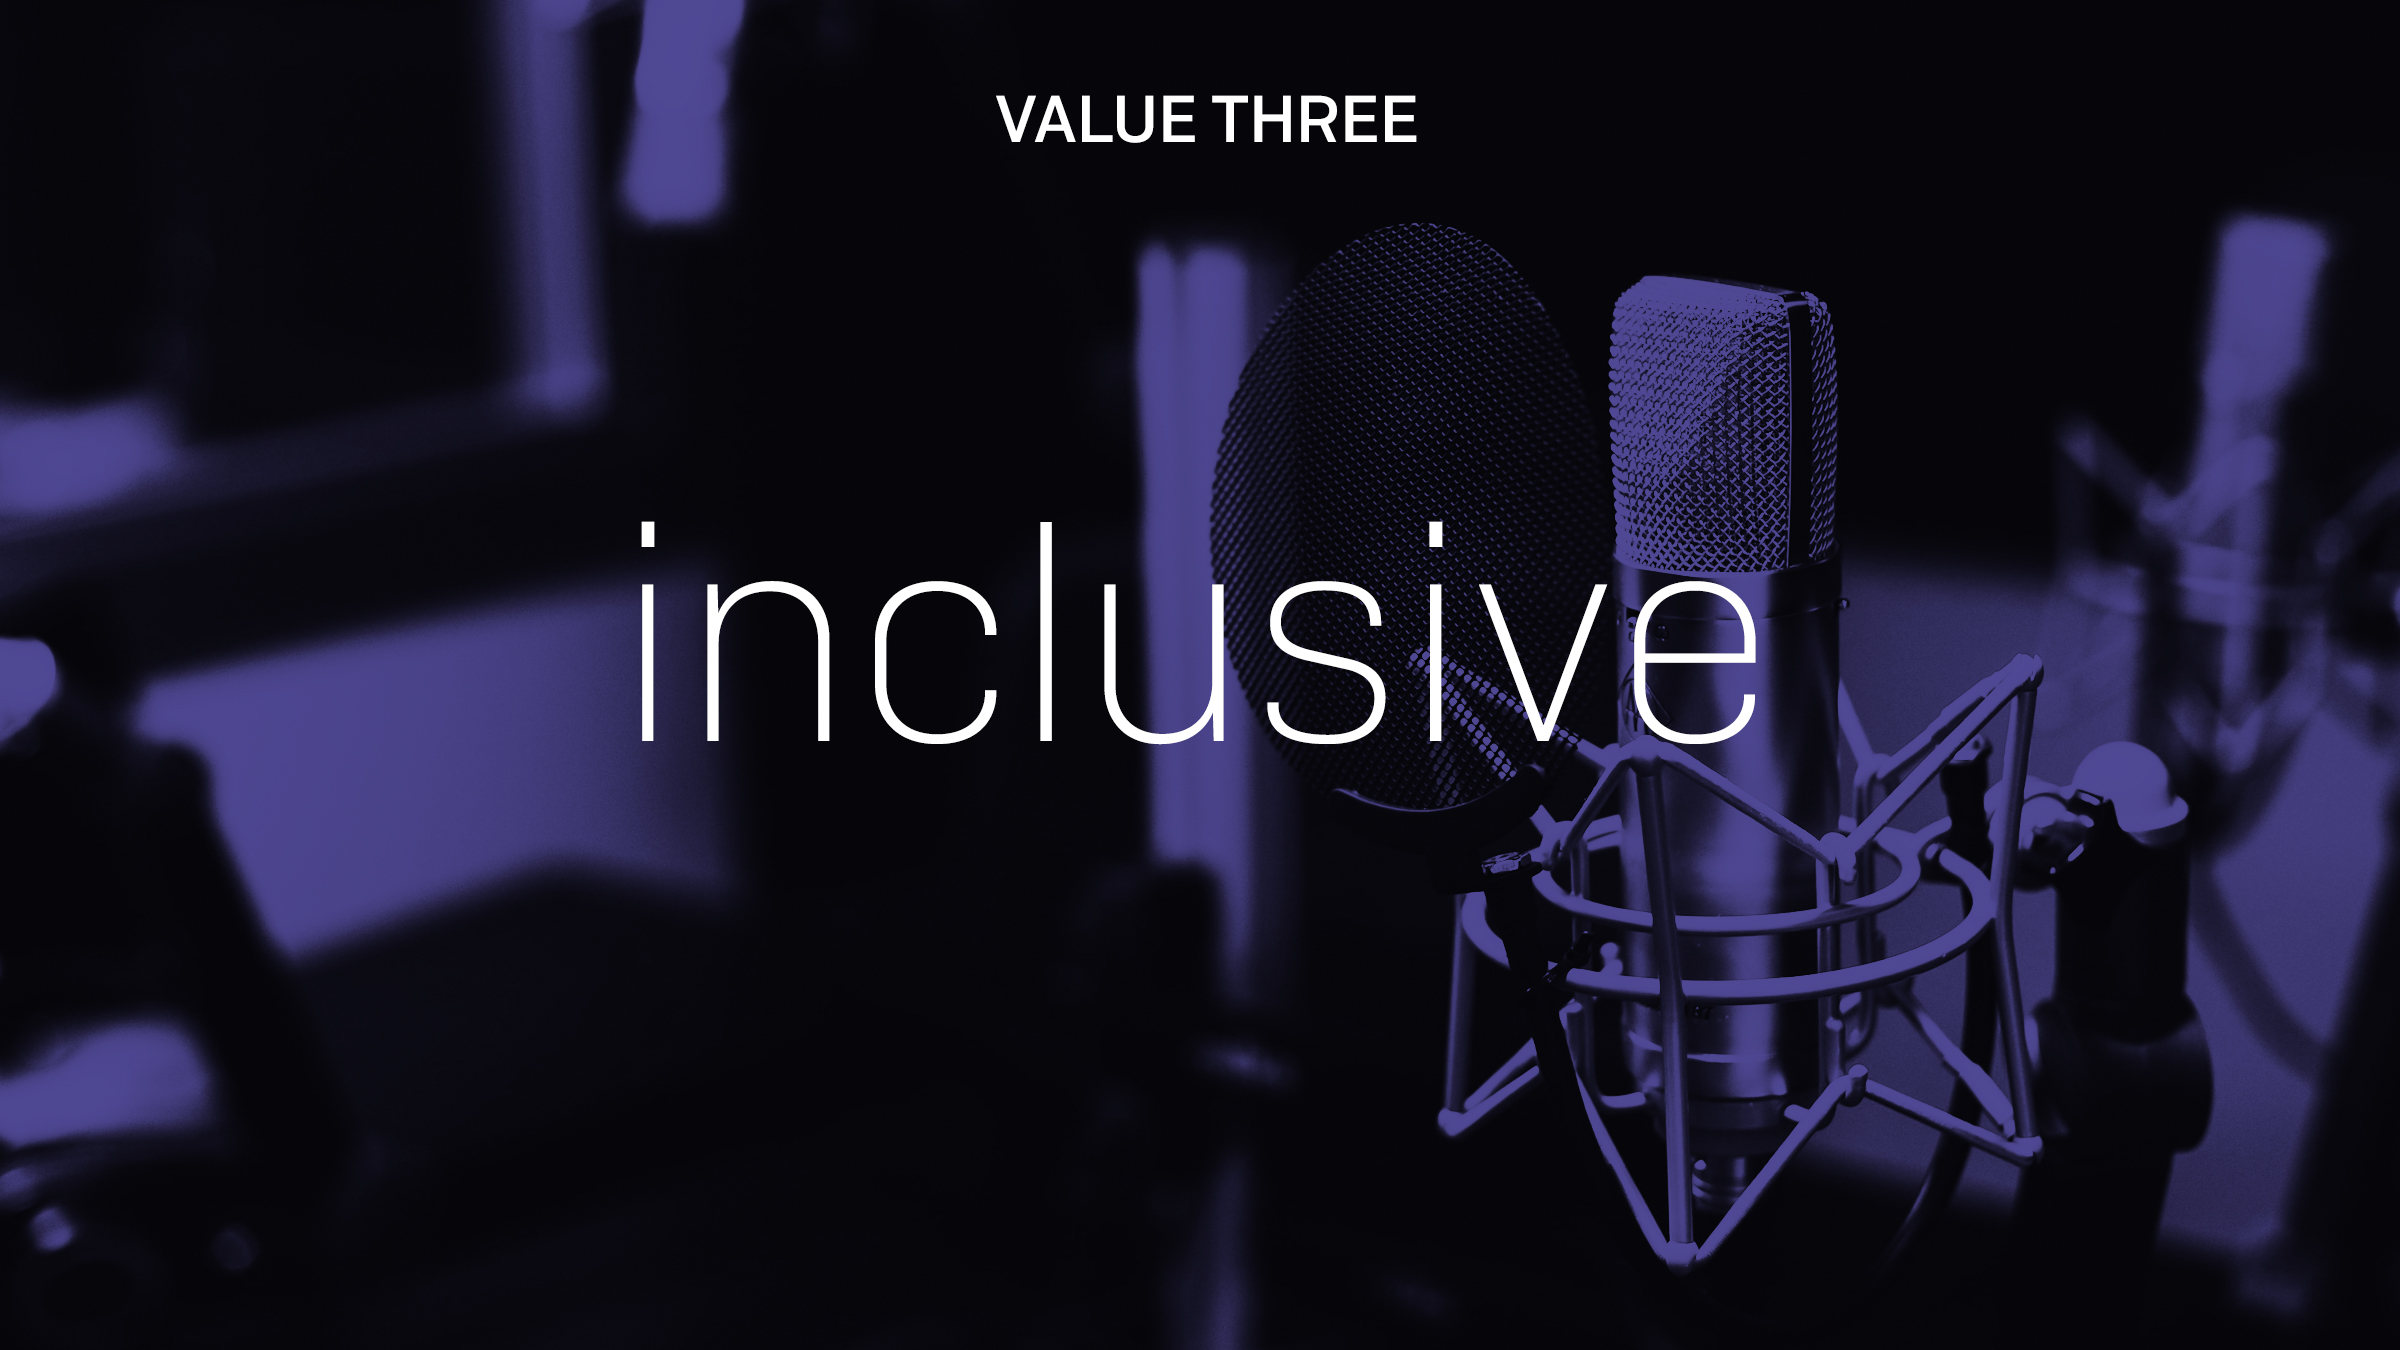 PRS Values Inclusive